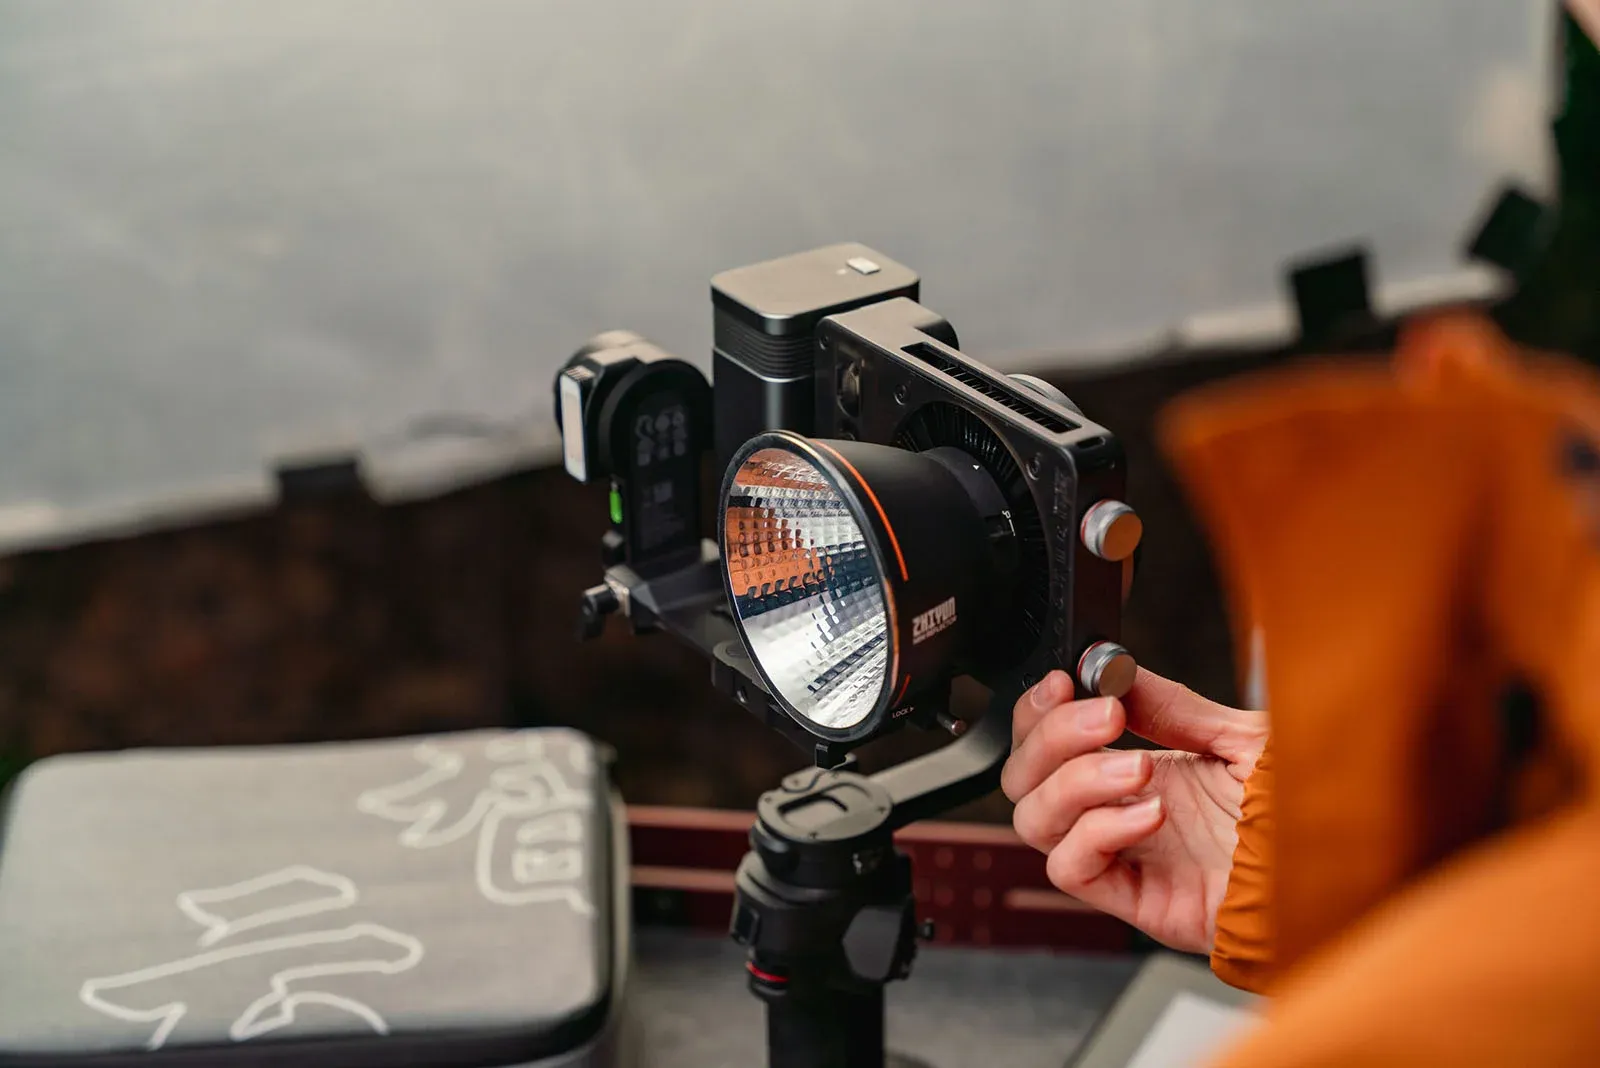 Zhiyun ra mắt đèn LED Molus G60 và X100 siêu nhỏ gọn dành cho những nhà sáng tạo nội dung